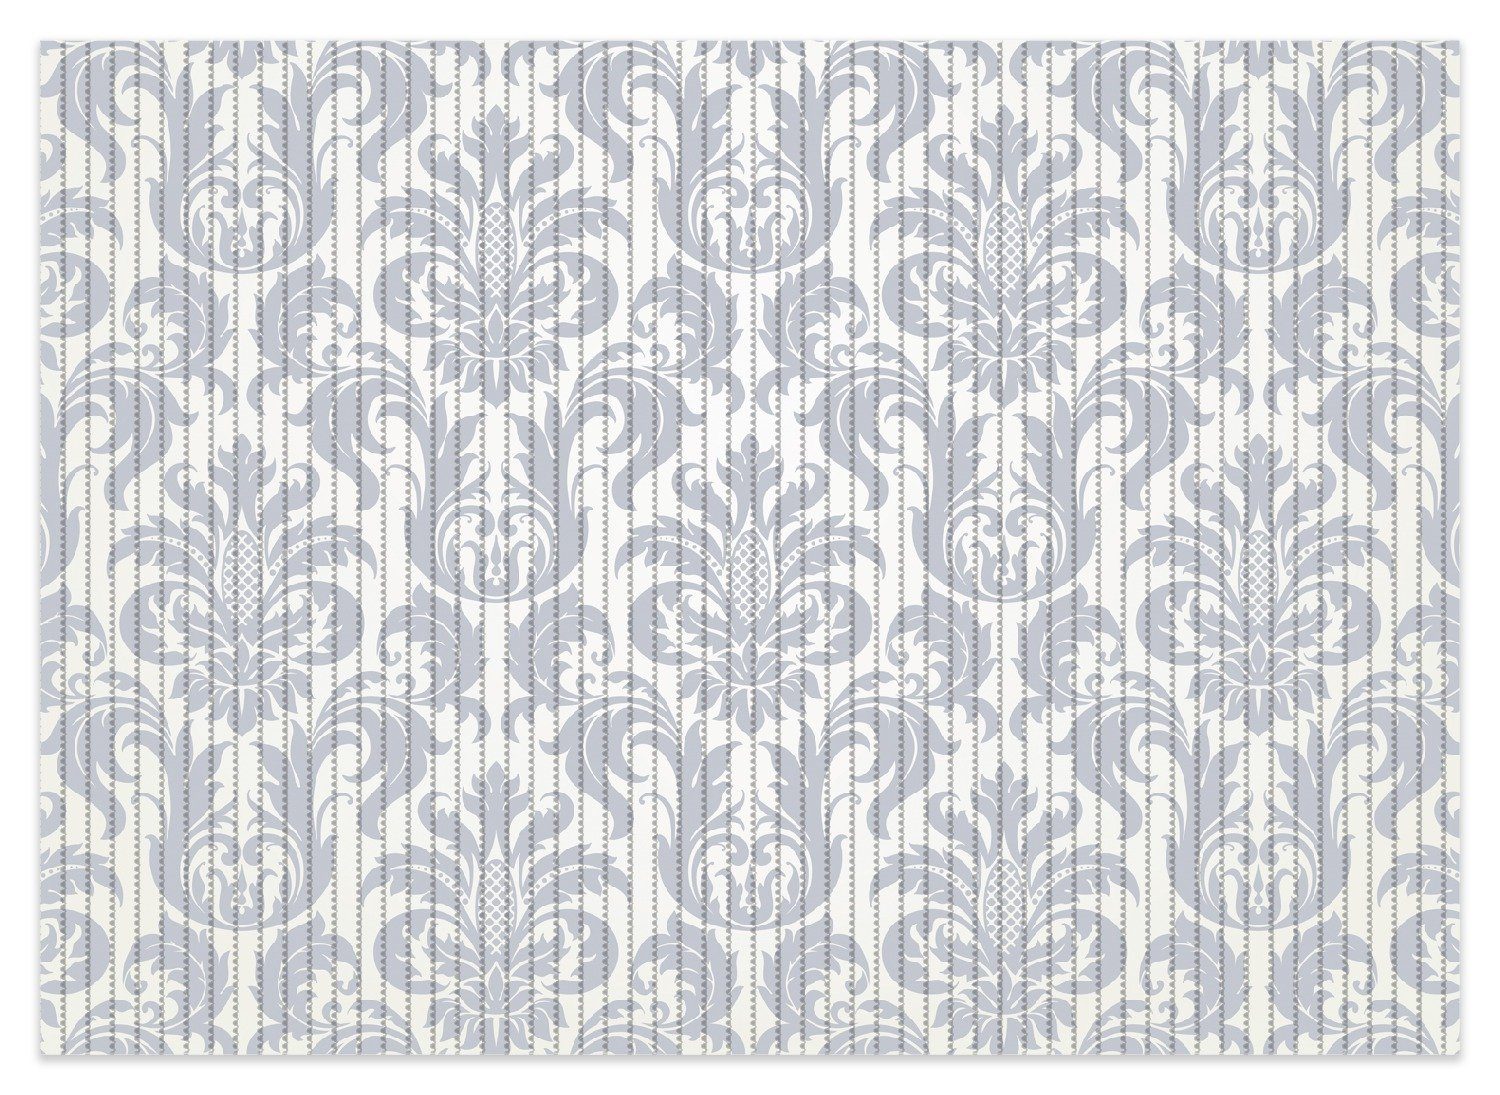 Schaum-Badematte Königliche Schnörkelei in weiß und blaugrau Wallario, Höhe 5.5 mm, rutschhemmend, geeignet für Fußbodenheizungen, Polymer-Schaum, rechteckig